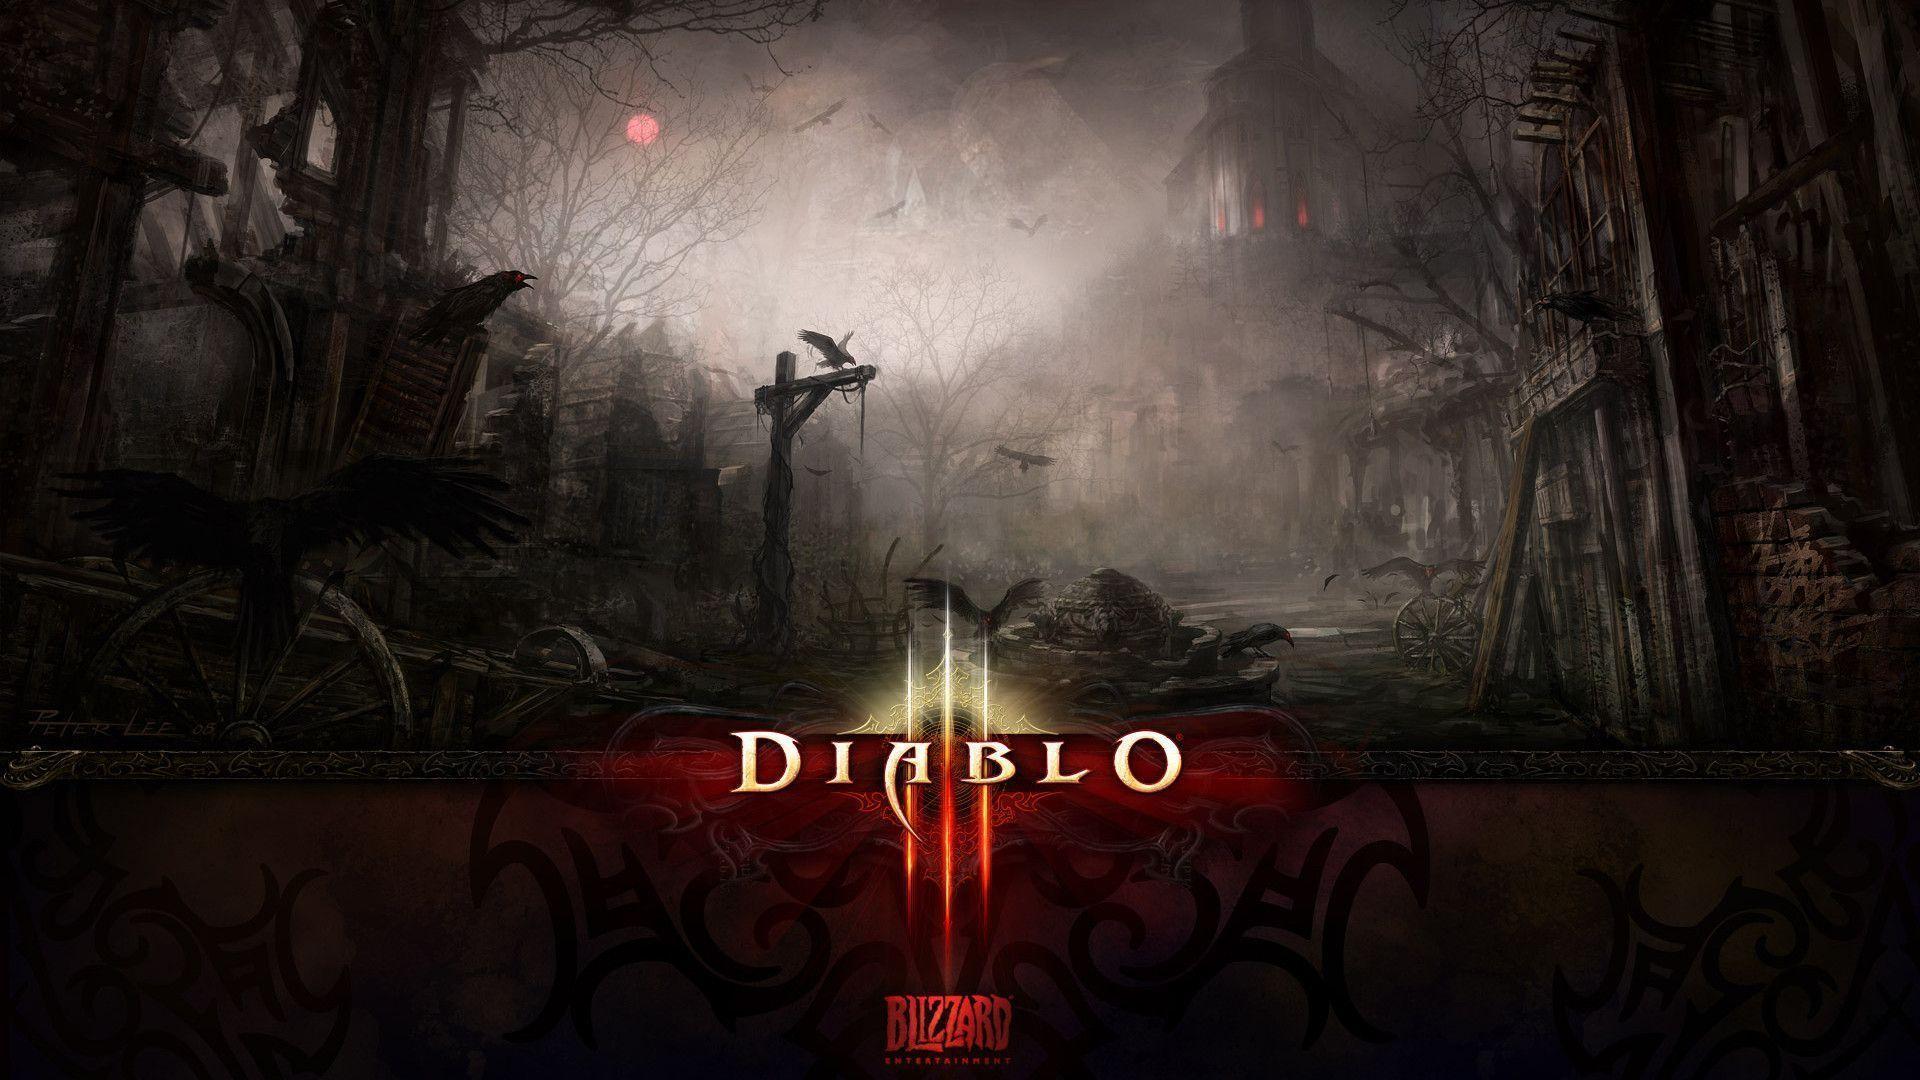 Diablo 3 Wallpaper 1920×1080. Piccry.com: Picture Idea Gallery